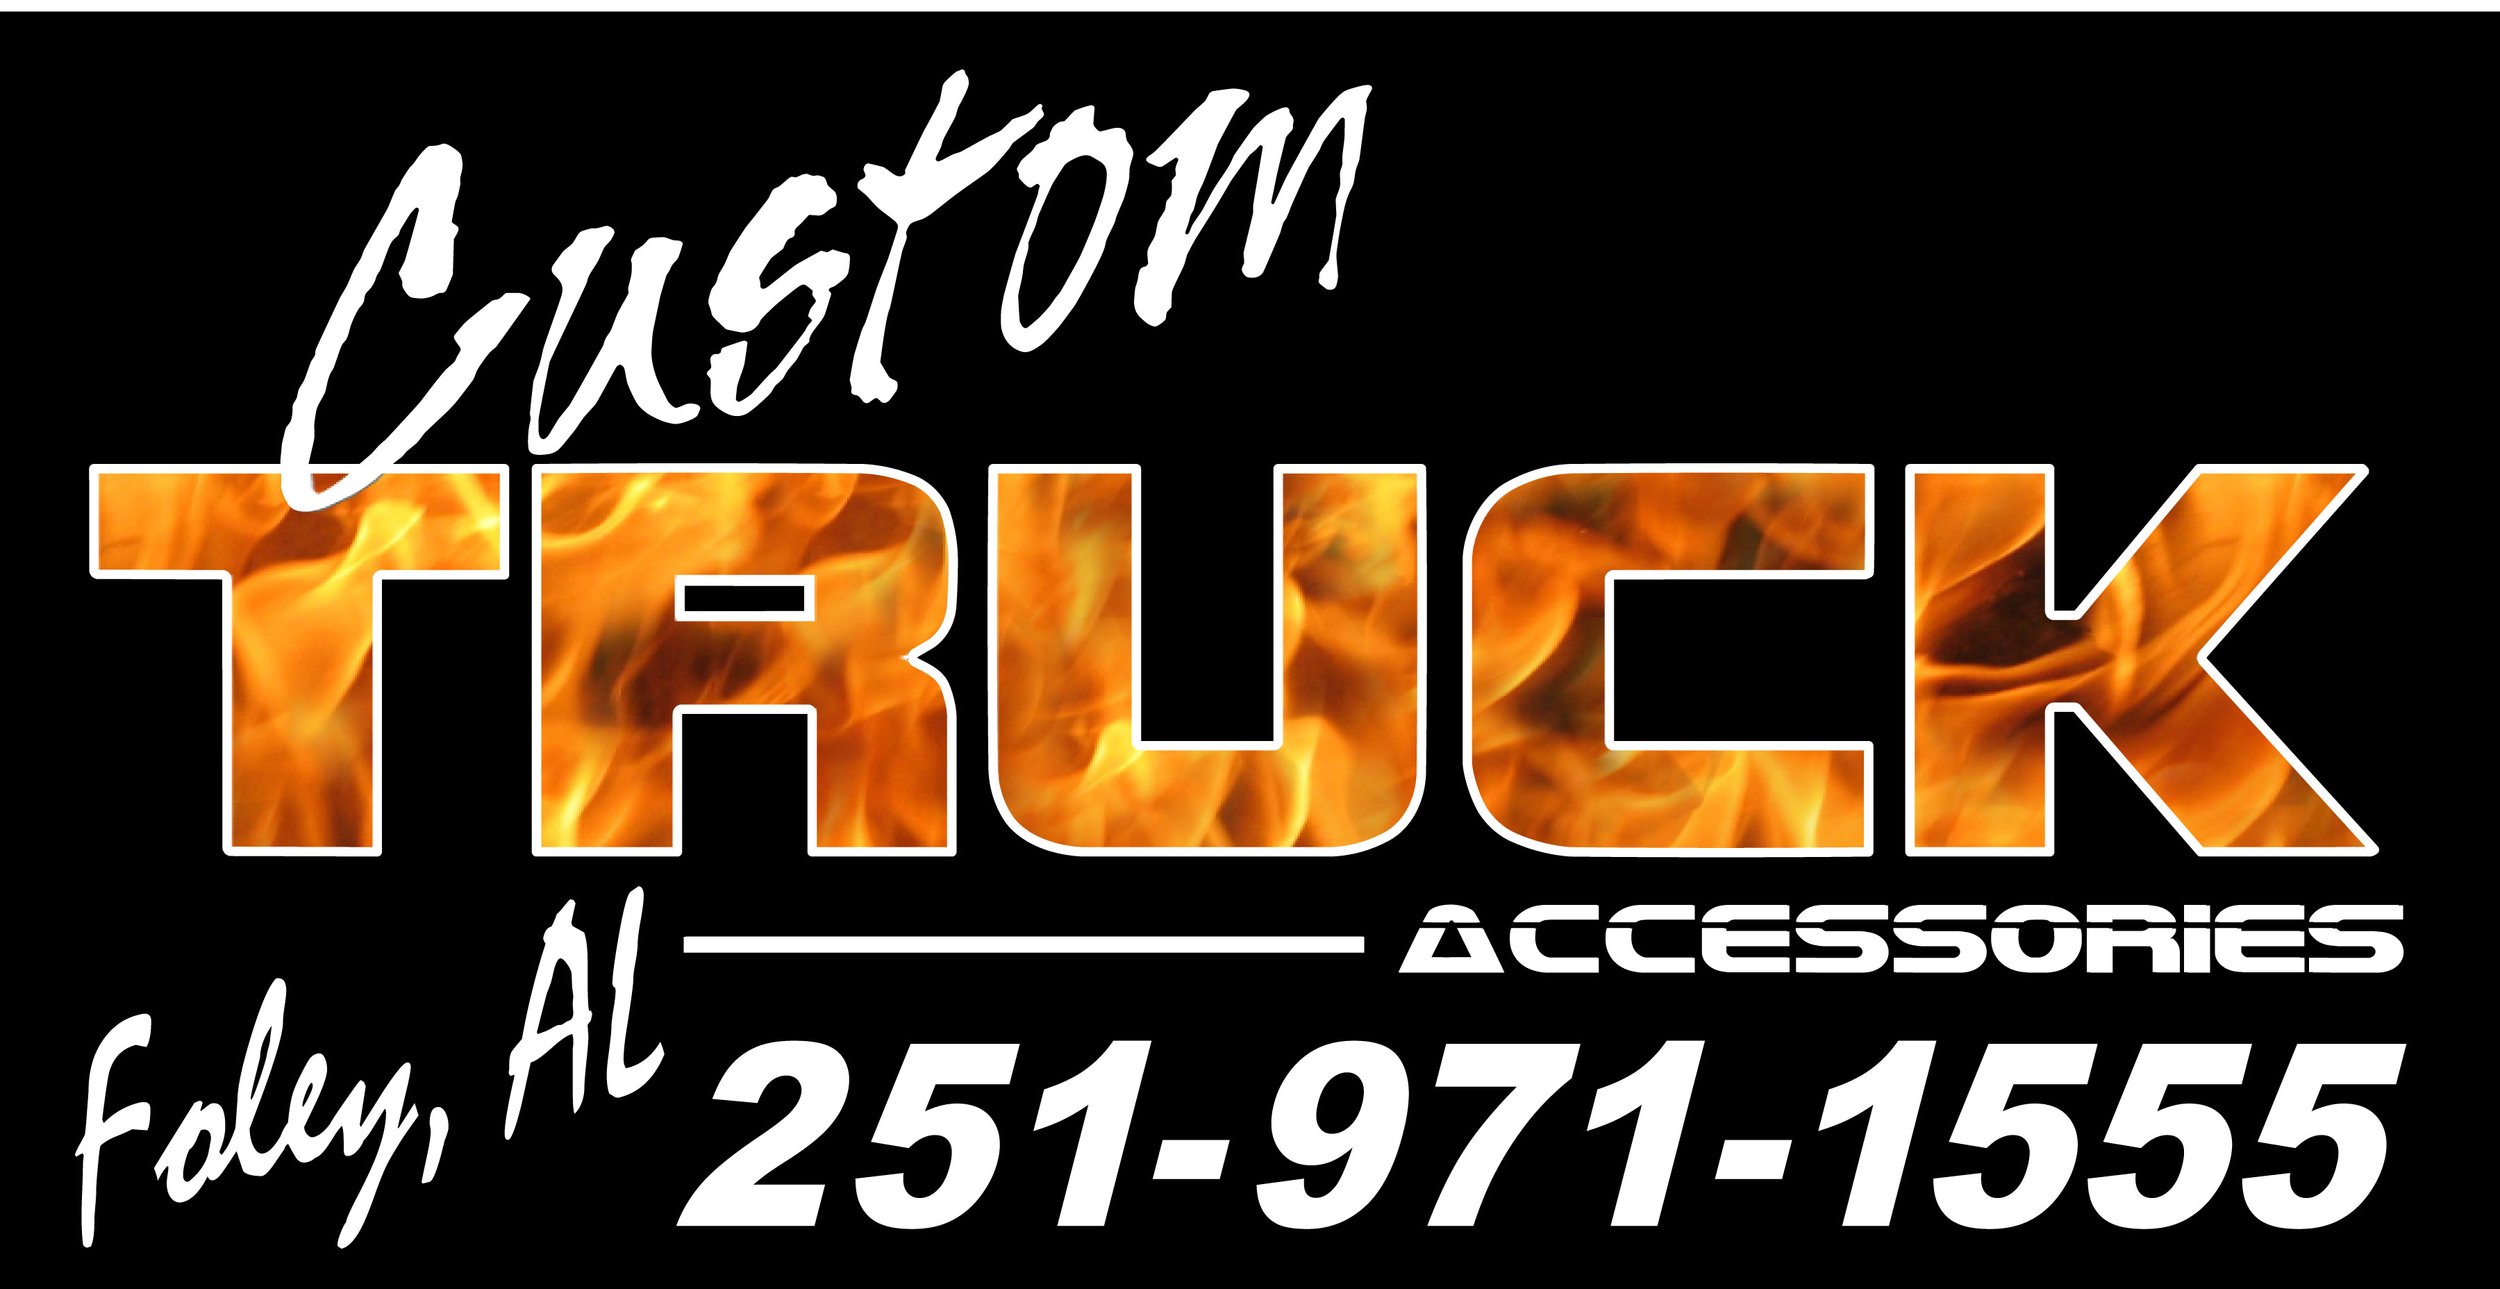 Custom-Truck - logo.jpg